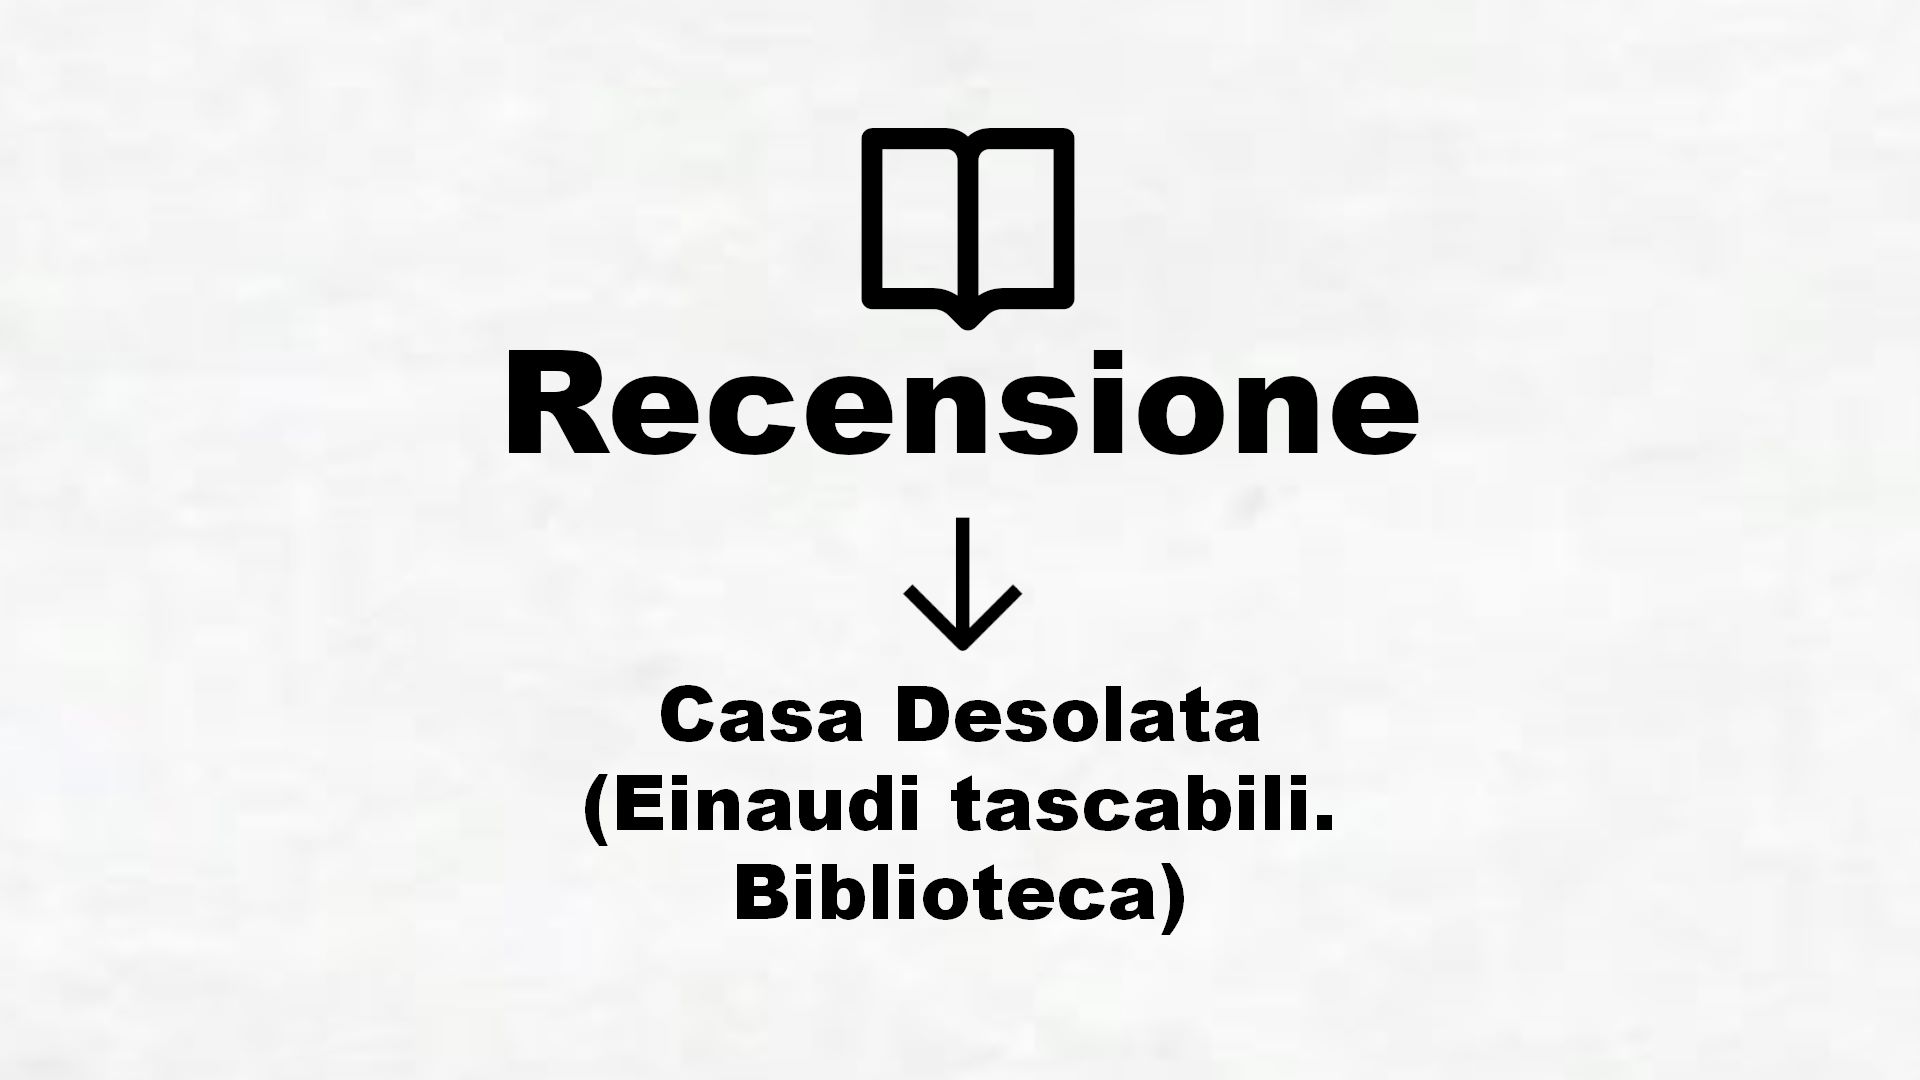 Casa Desolata (Einaudi tascabili. Biblioteca) – Recensione Libro